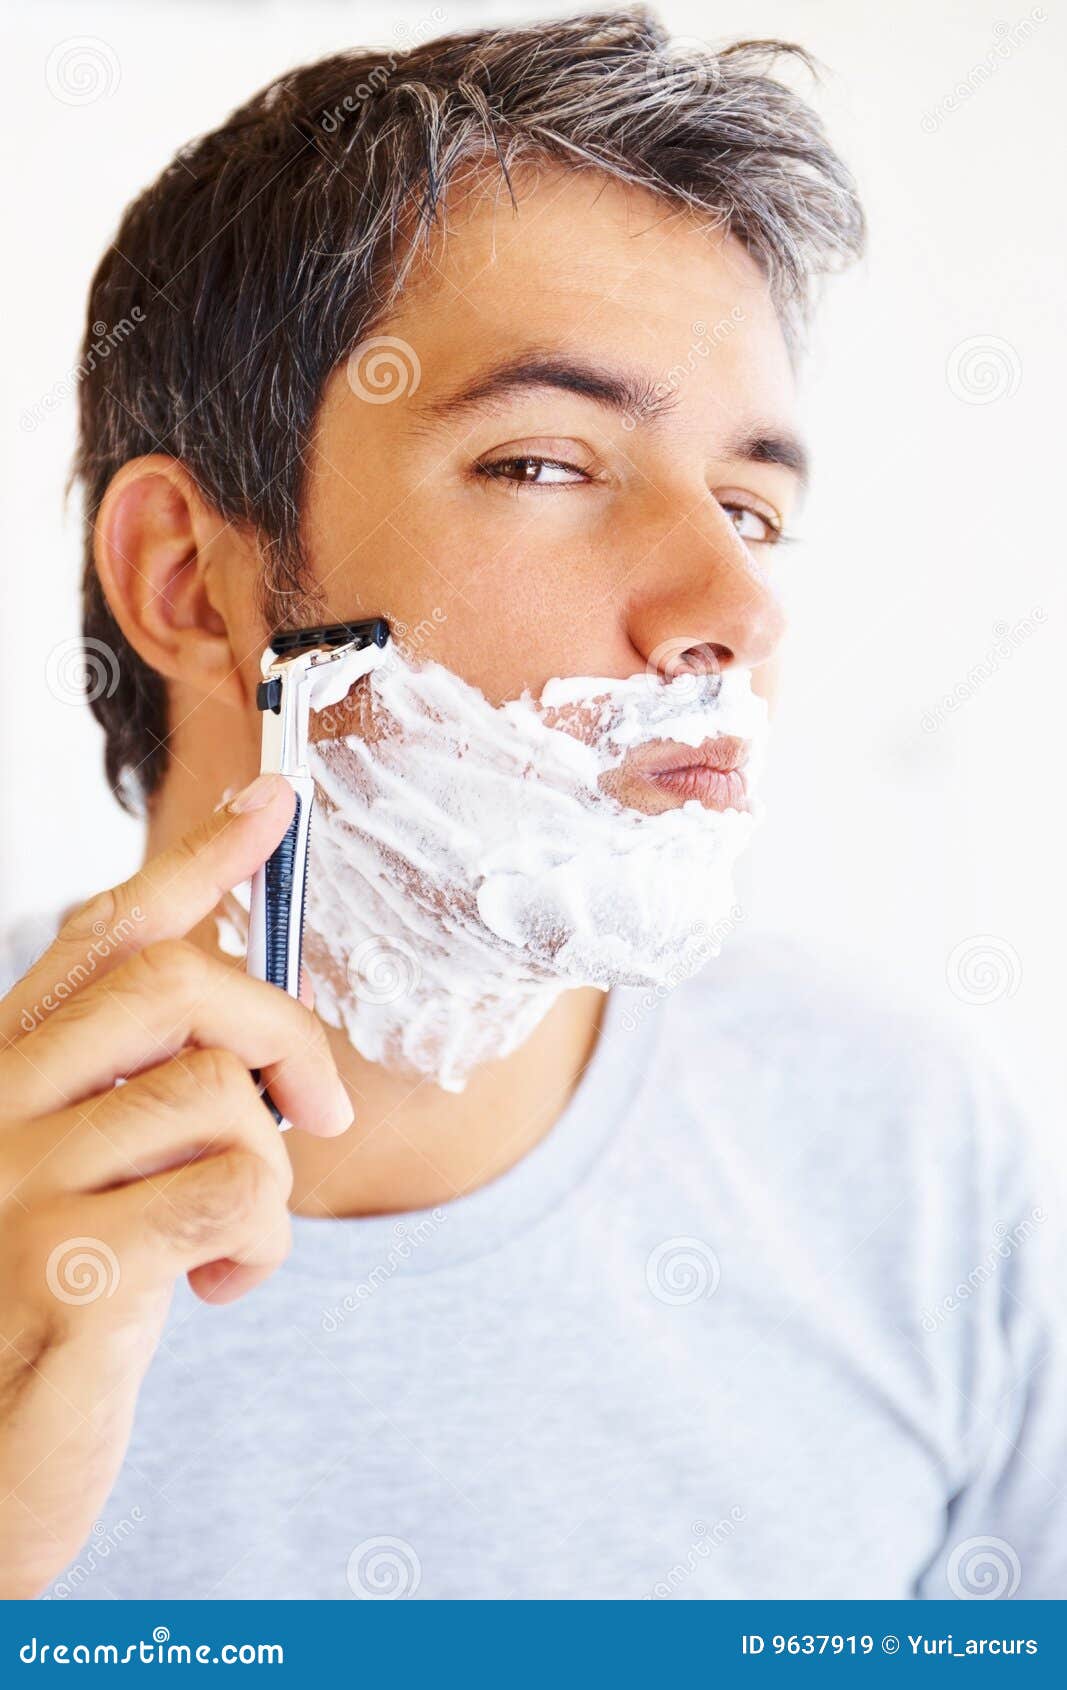 Бреют какое лицо. Мужчина бреется. Бритье лица. Фотосессия бритье. Бритья для мужчин.